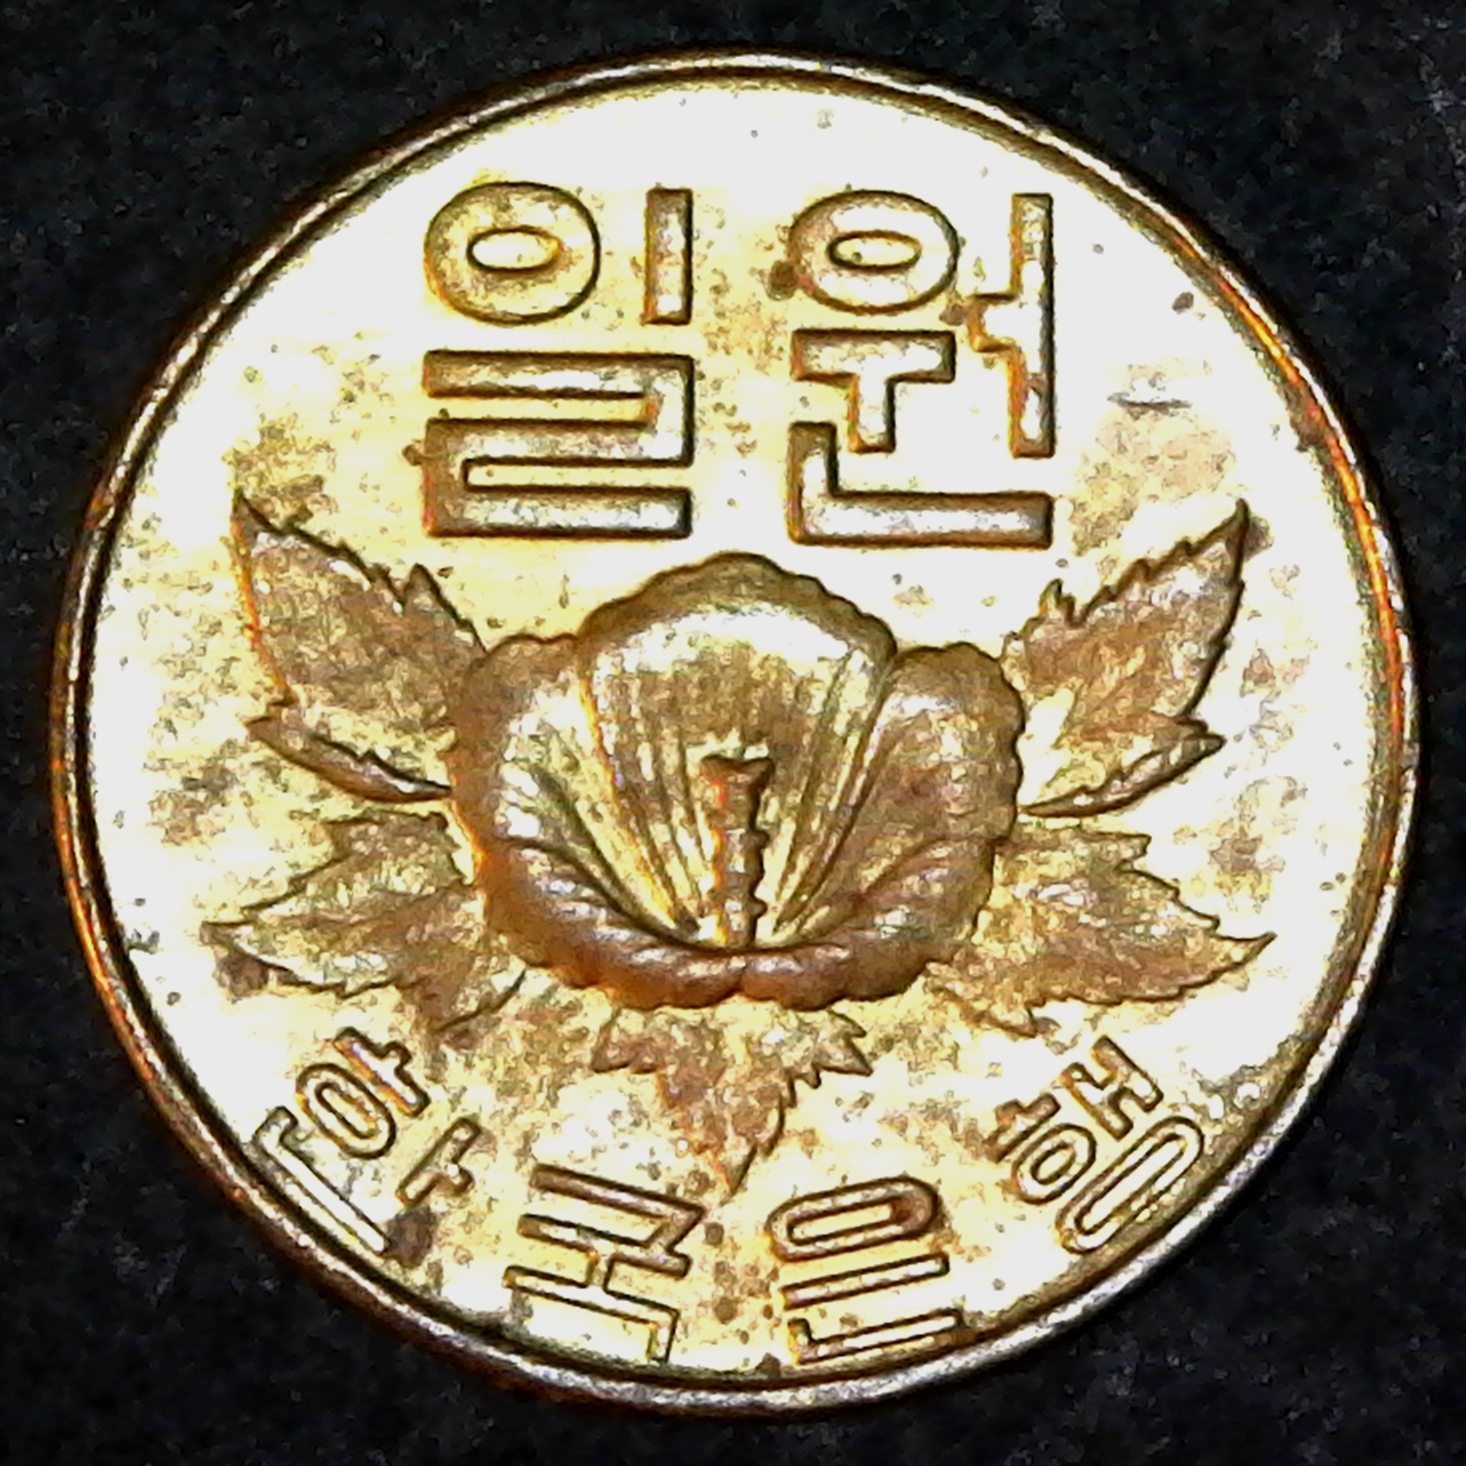 South Korea 1 Won 1967 obverse A.jpg